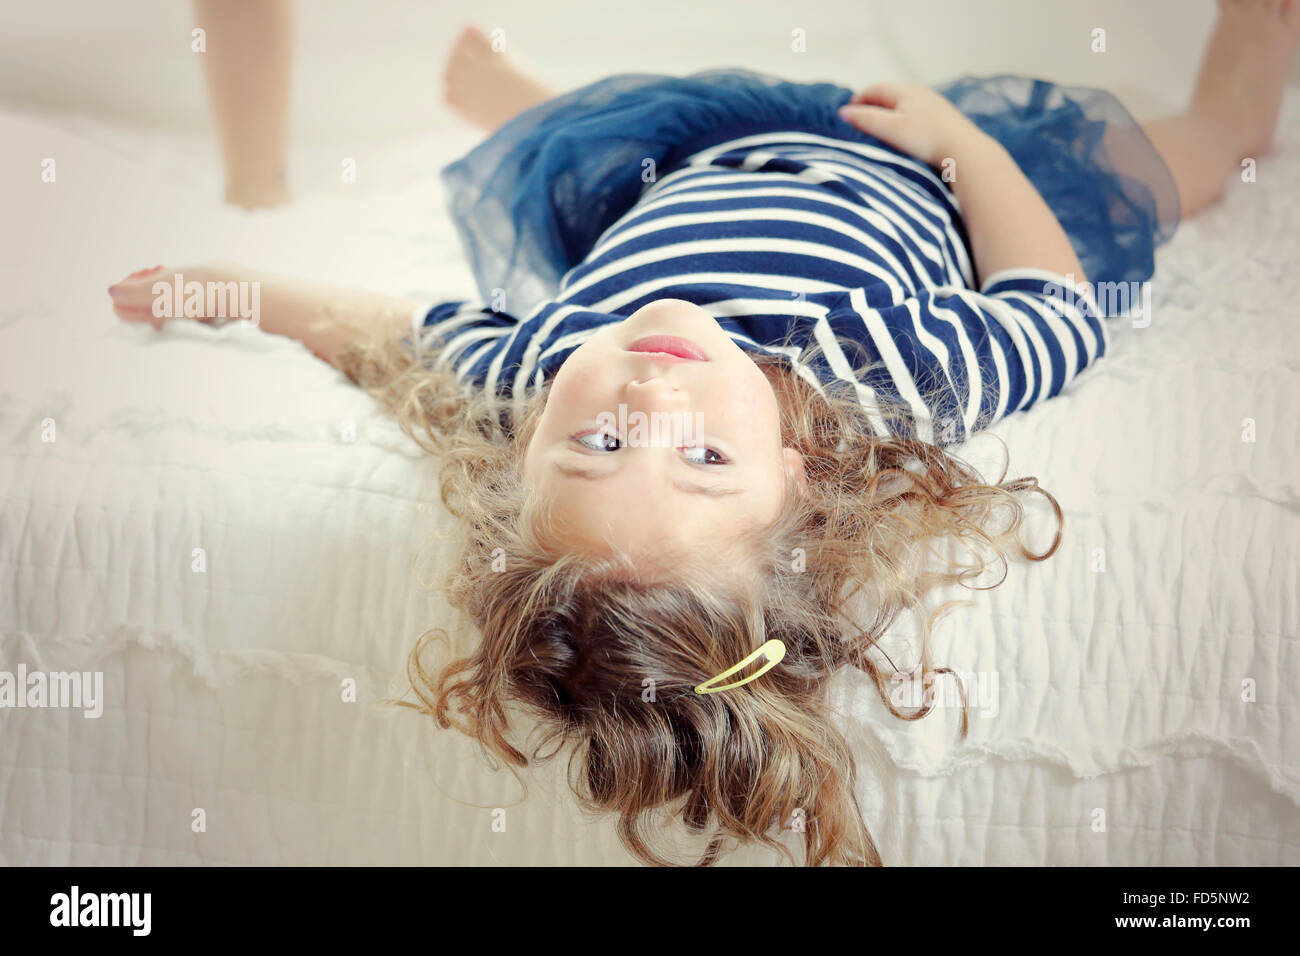 Bild eines kleinen Mädchens auf ihrem Bett mit ihren Kopf hängen über den Rand, so dass sie auf den Kopf gestellt ist. Stockfoto